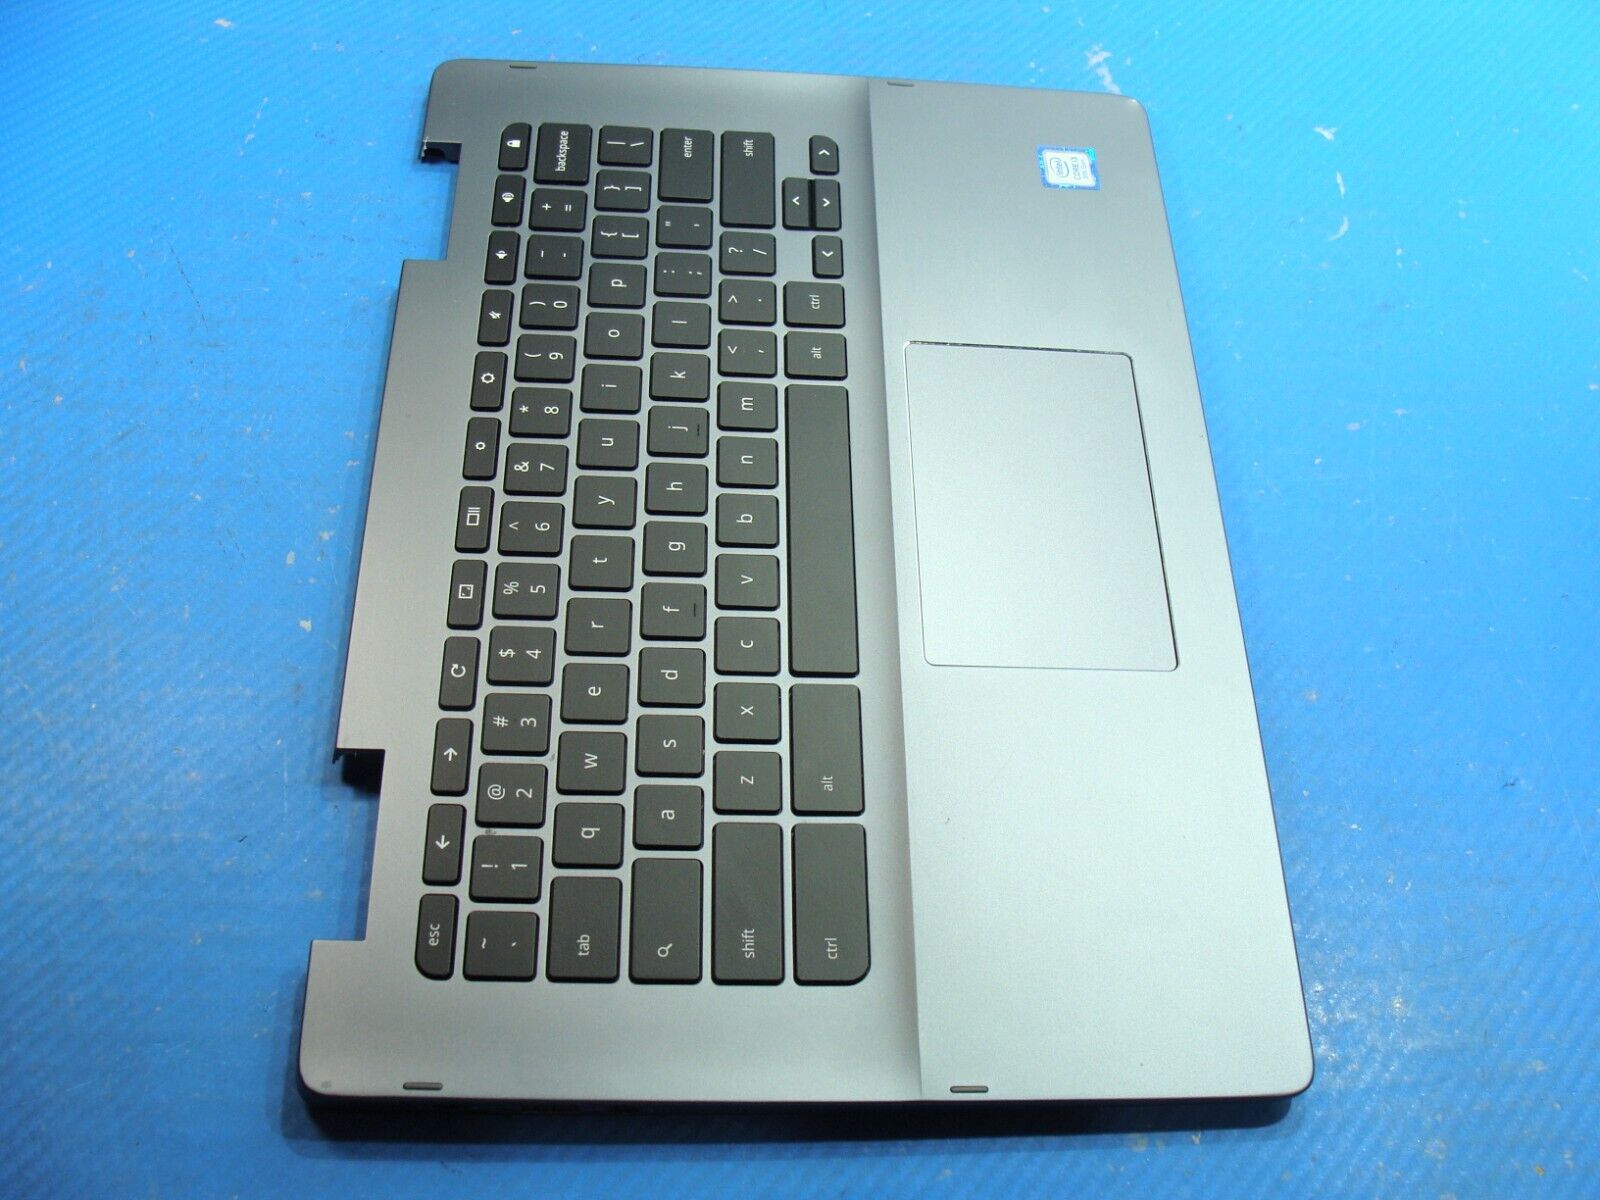 Dell Inspiron Chromebook 7486 14